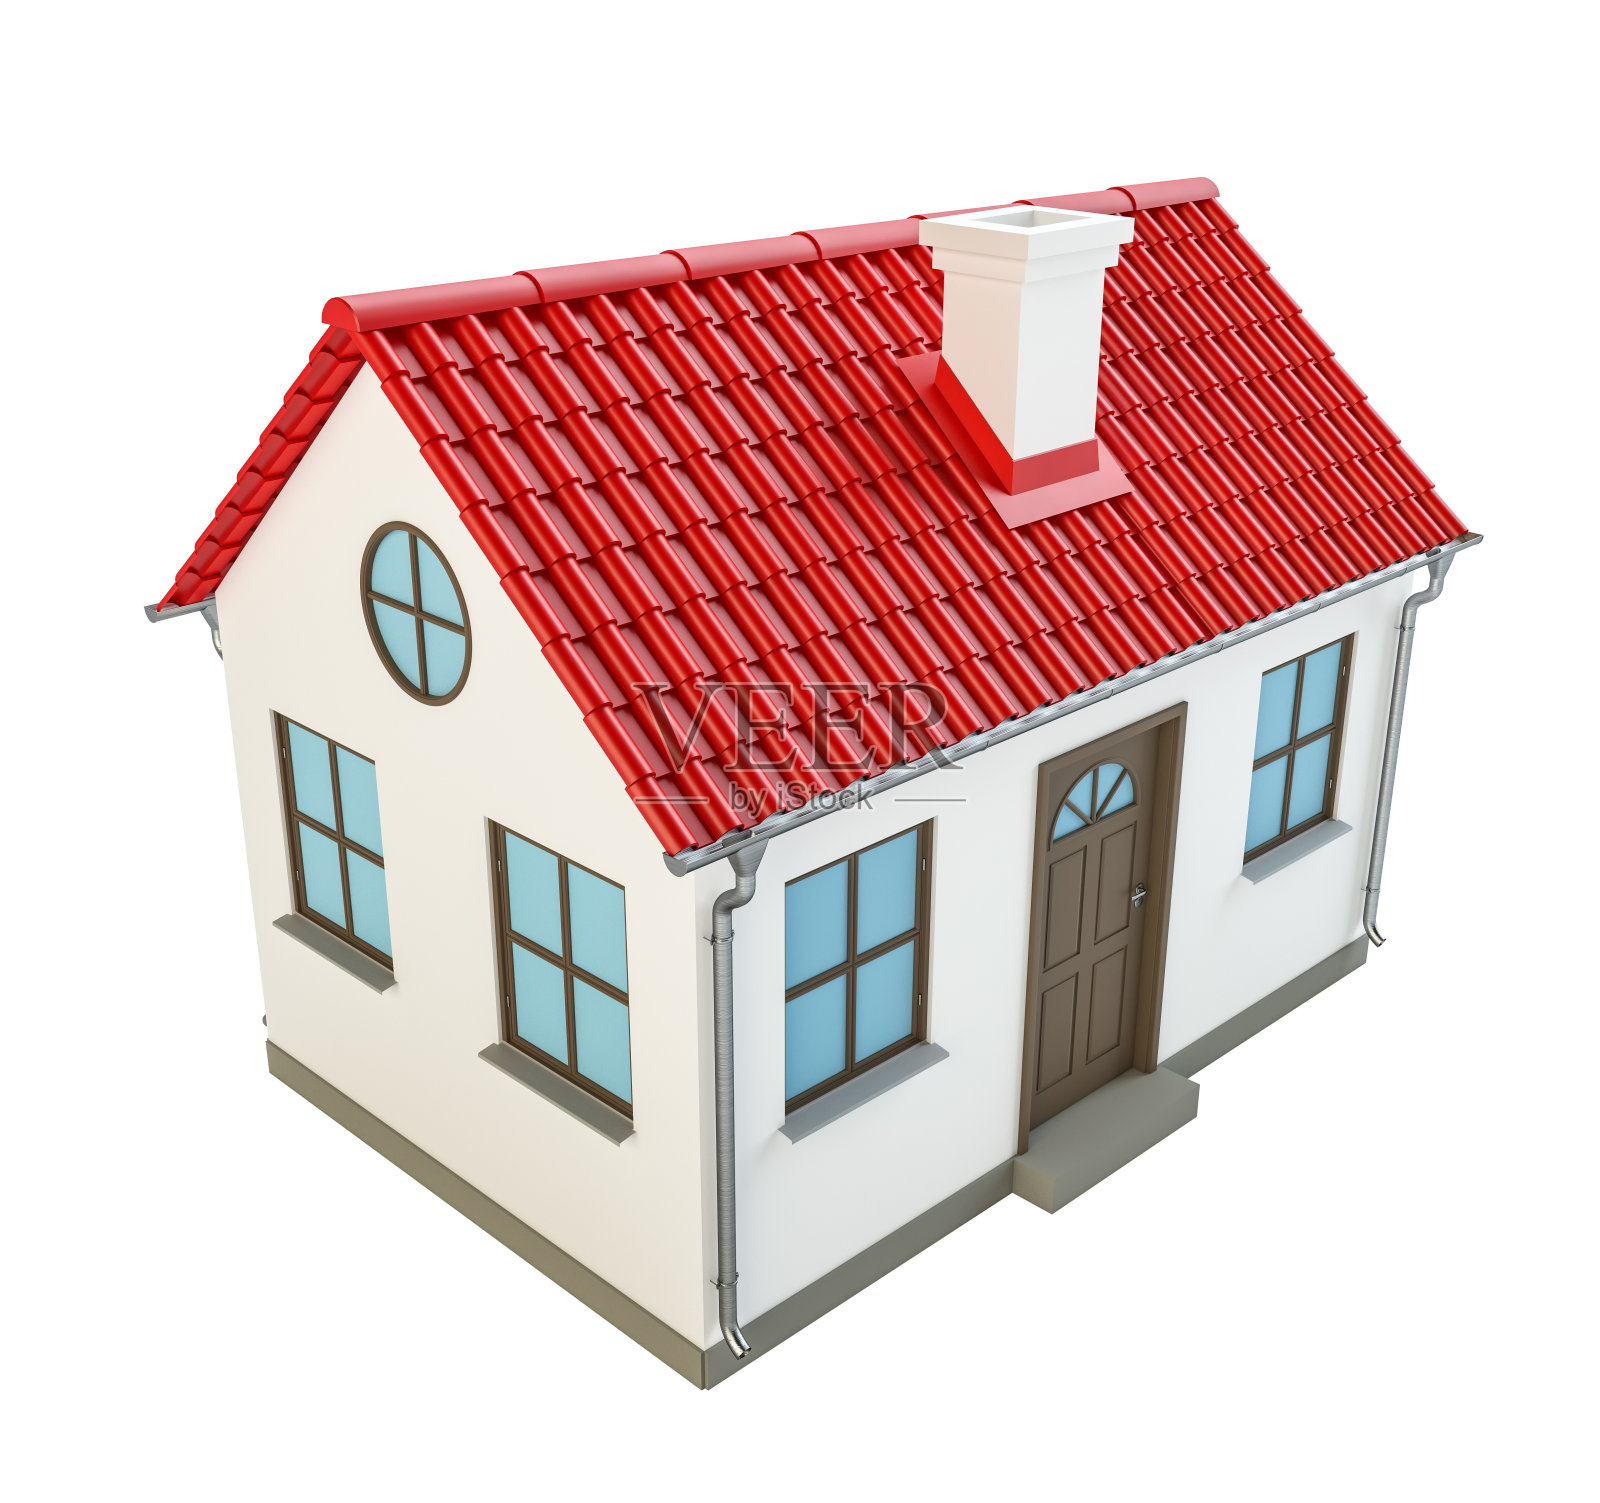 漂亮的红色屋顶的房子模型照片摄影图片